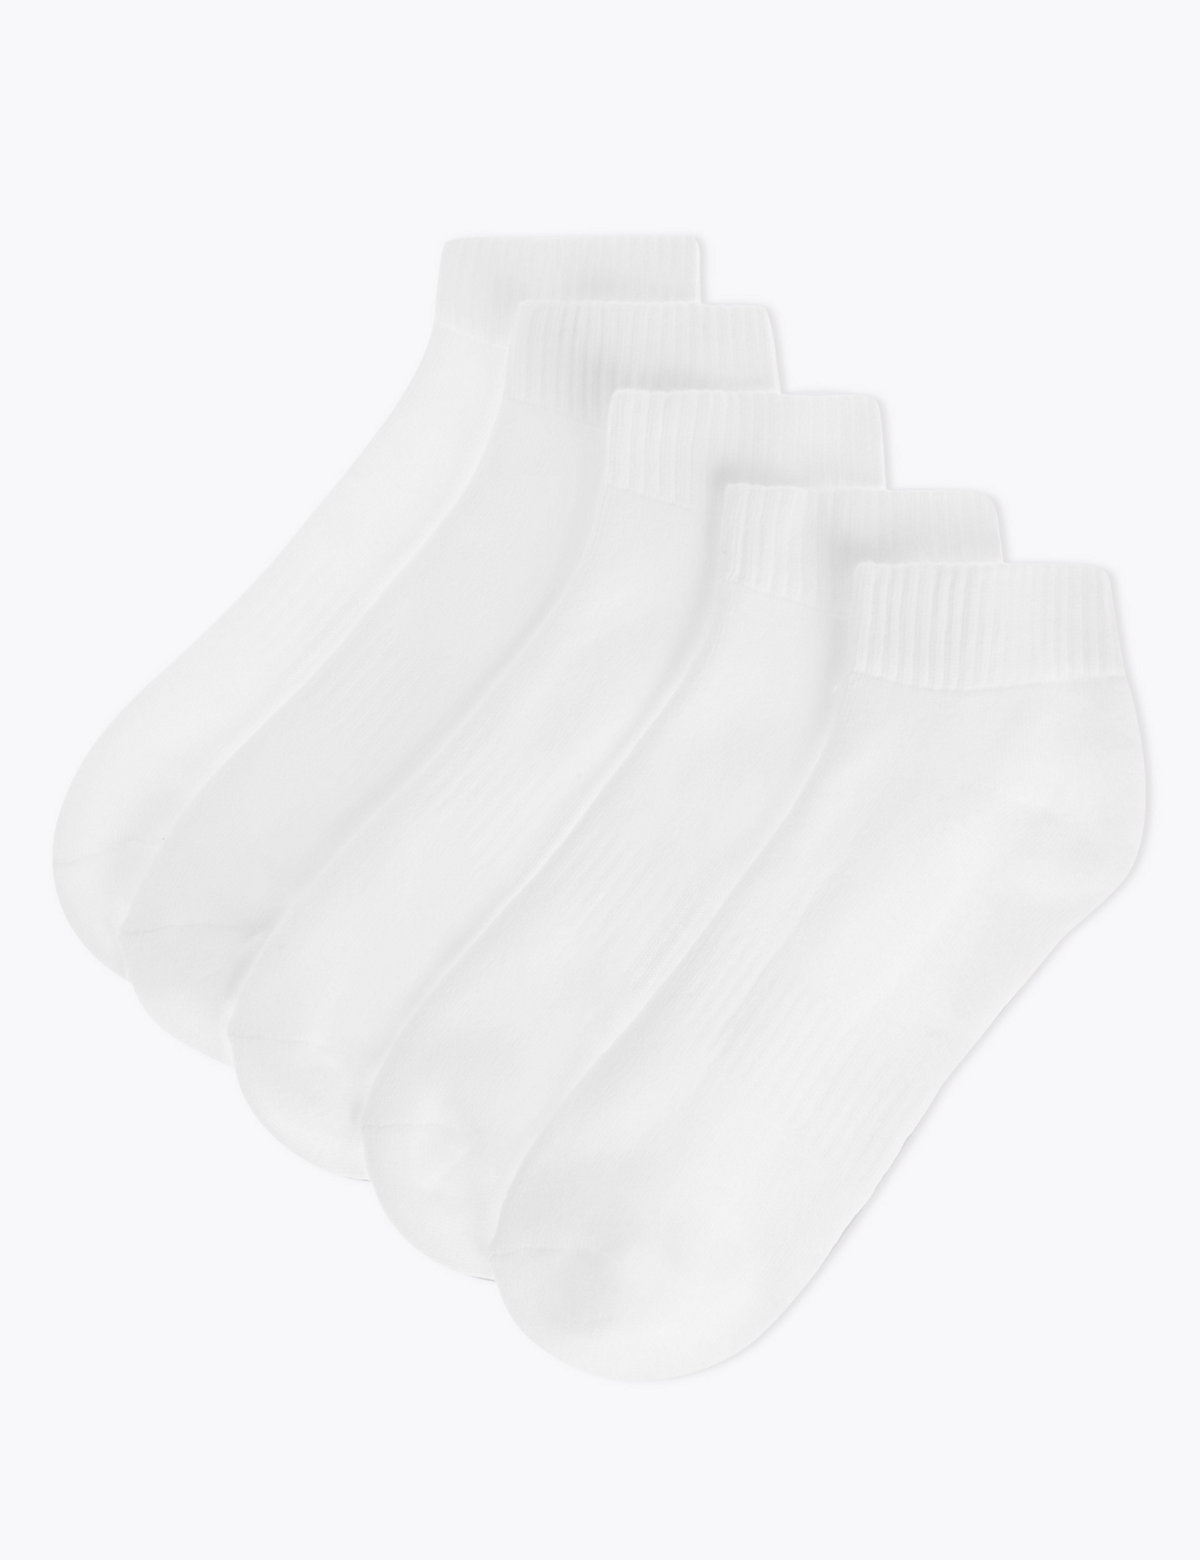 5 Pack Cool & Freshfeet™ Cushioned Socks